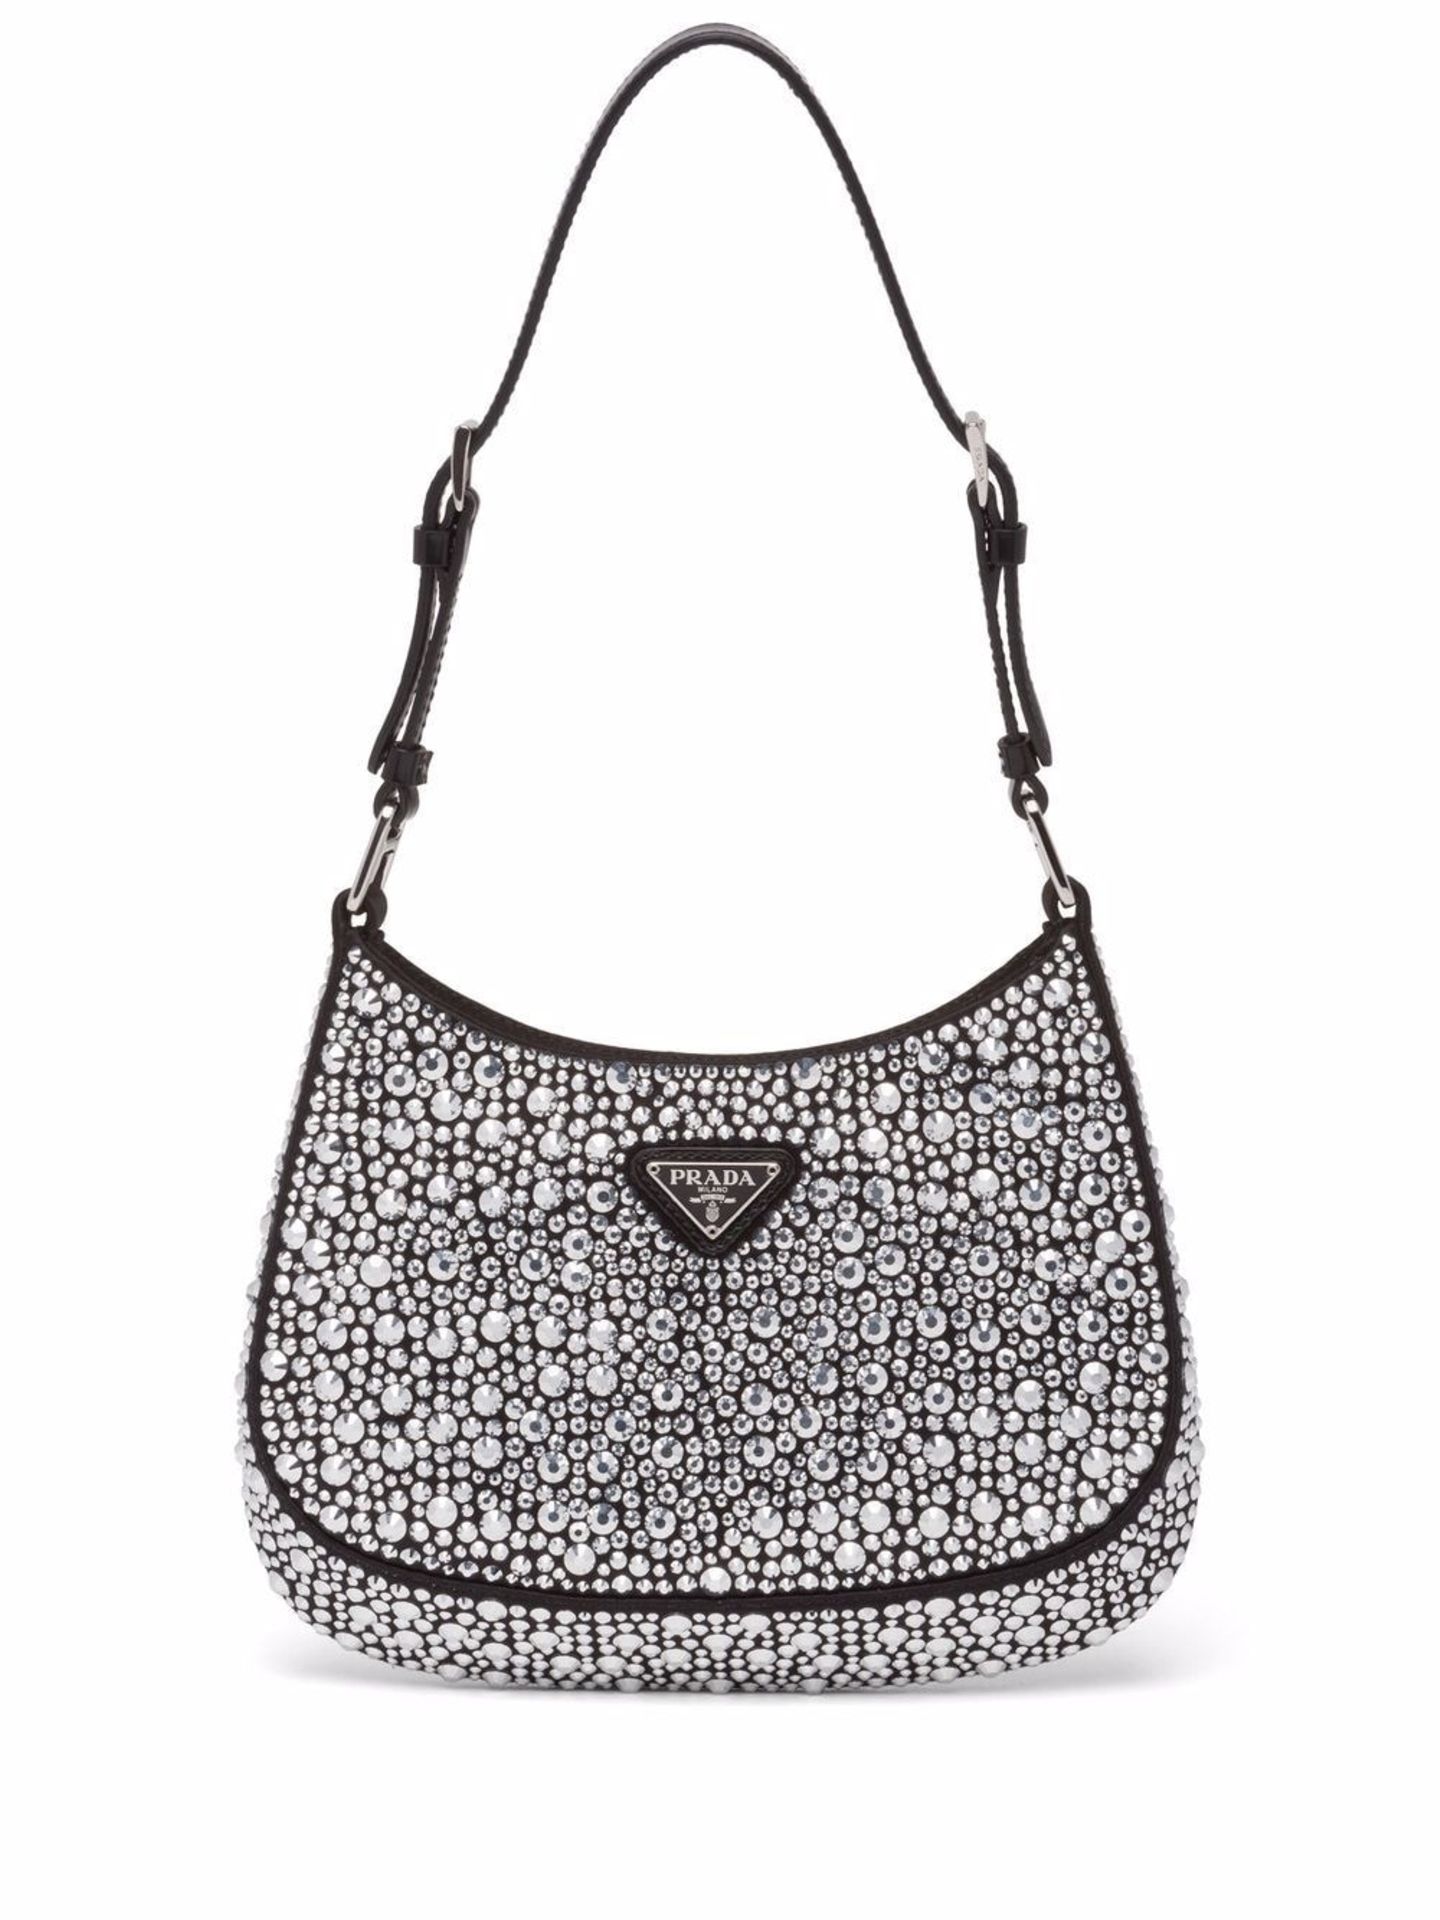 Die Schultertasche "Cleo" mit Kristallverzierungen von Prada begegnet uns aktuell überall auf Instagram. Die kleine It-Bag sieht nicht nur besonders aus, sie macht auch jeden Look gleich ein bisschen eleganter. Von Prada, etwa 2600 Euro.